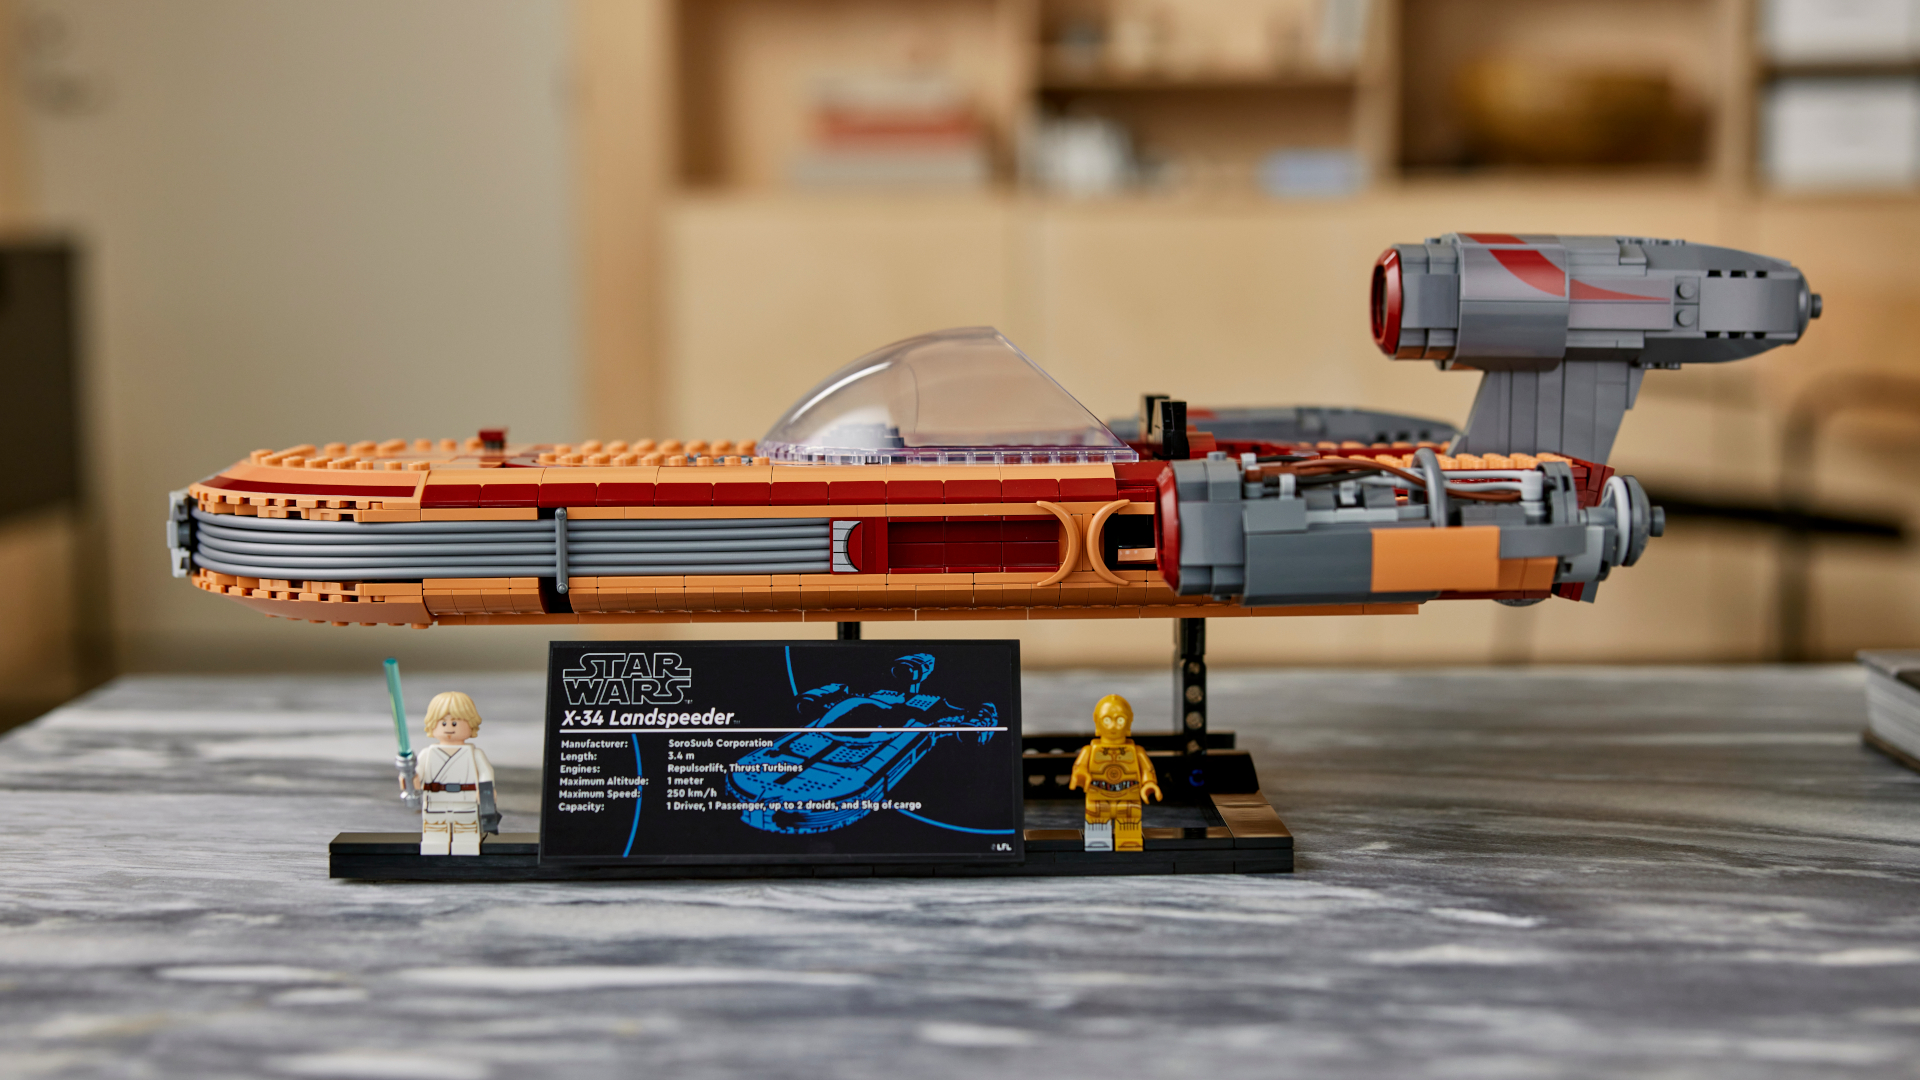 Luke Skywalker’s landspeeder is getting a Lego makeover for Star Wars day